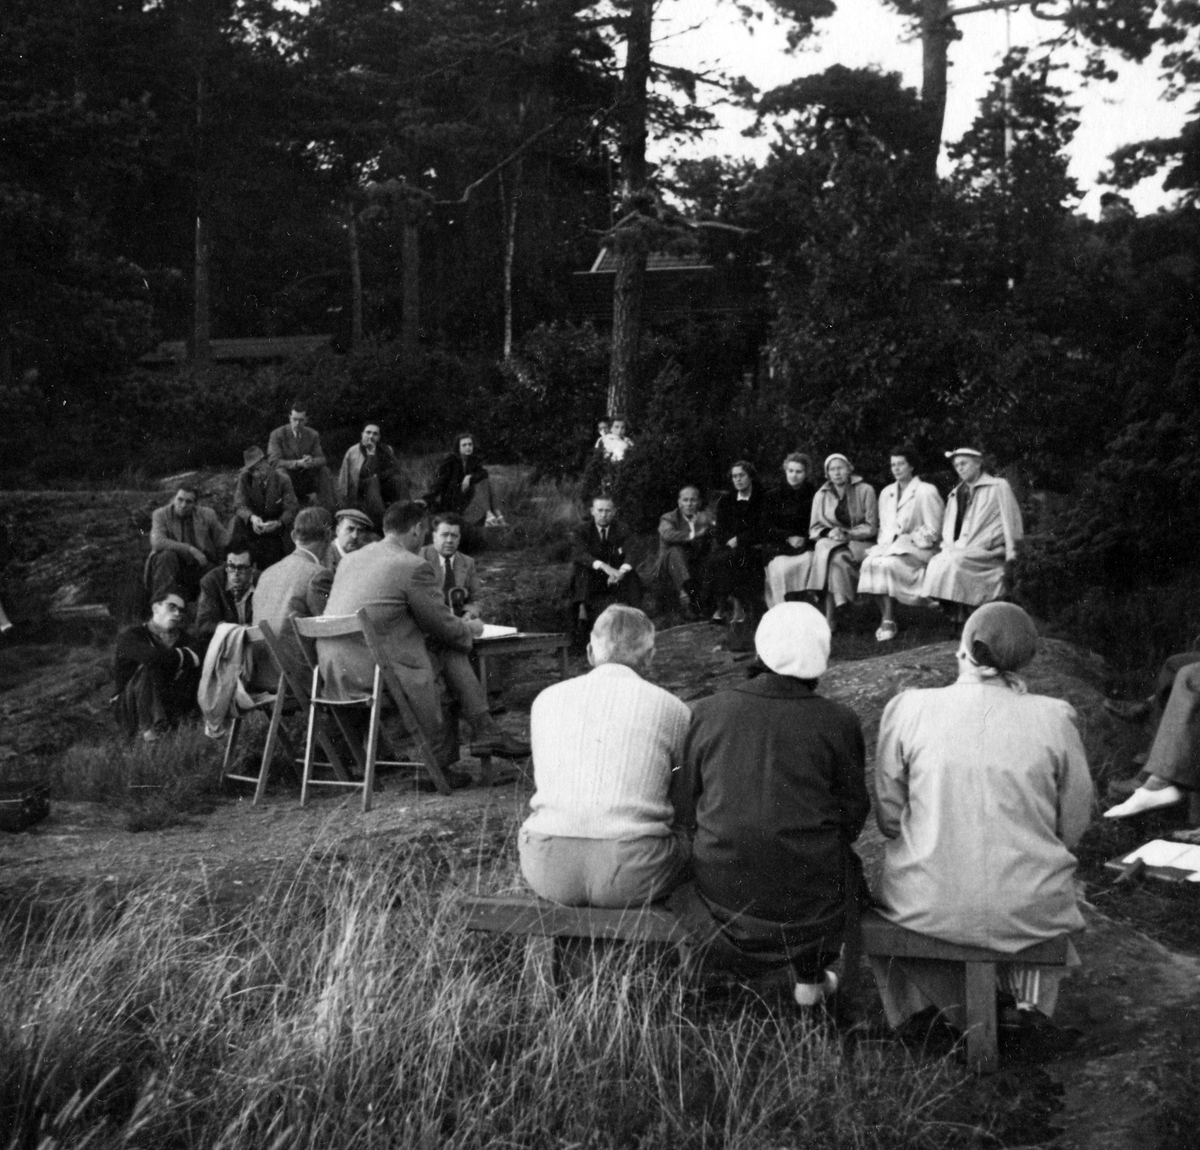 Ett tjugotal personer på ett årsmöte vid strandkanten 1954. Anteckning på kortets baksida: "Årsmöte 1954".